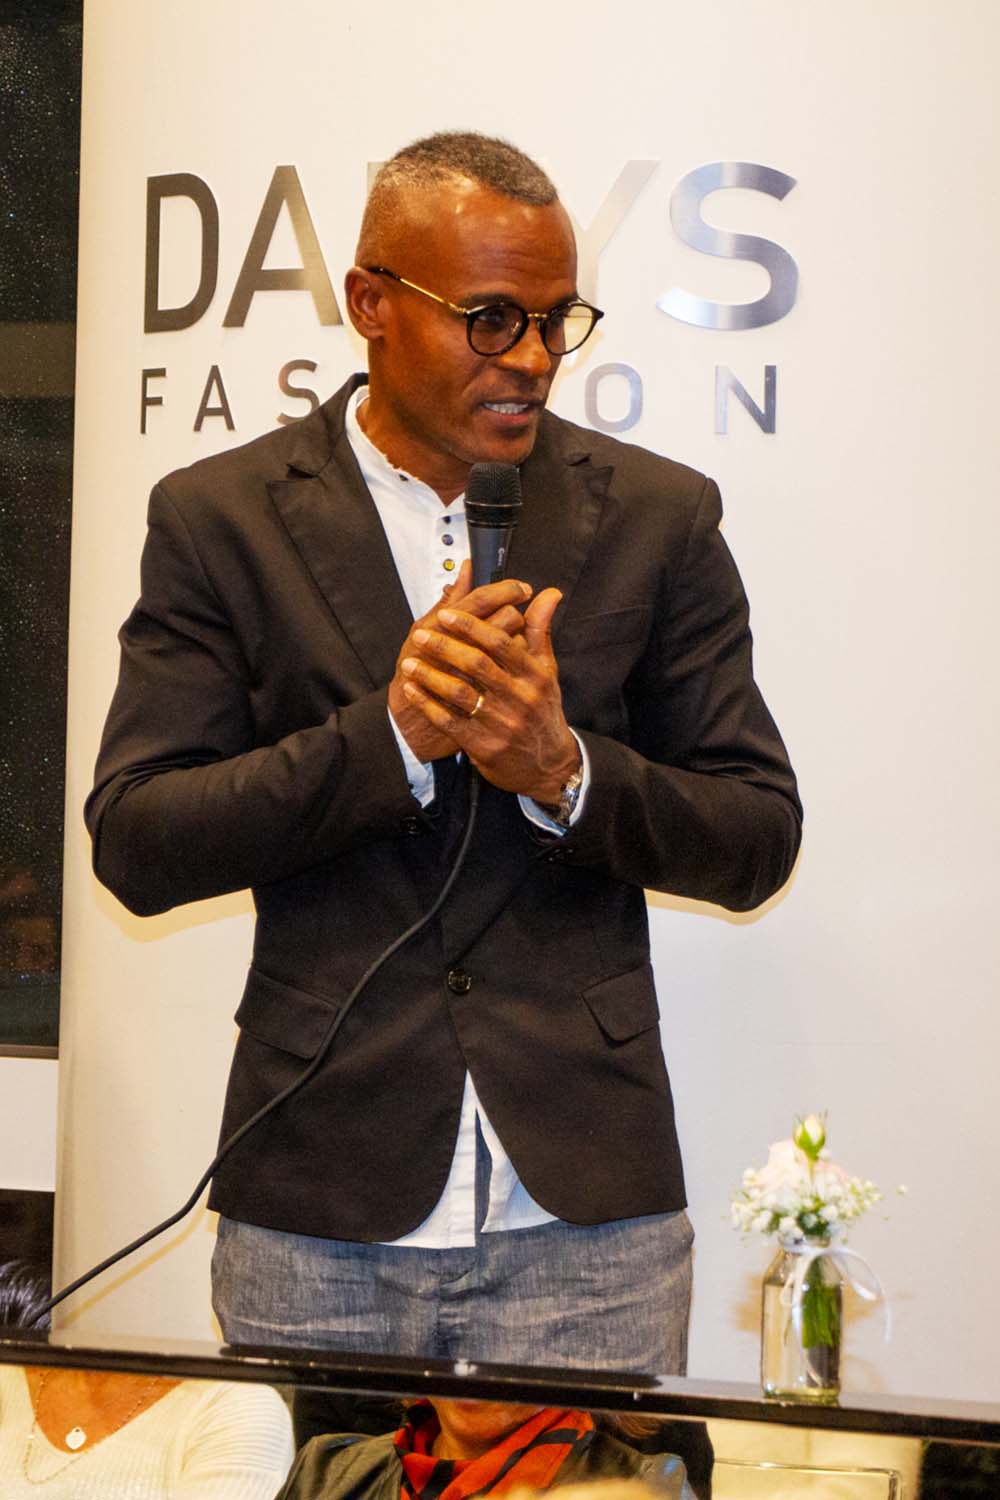 Osniel - Evento Fuori la voce | Danys Fashion Carpi